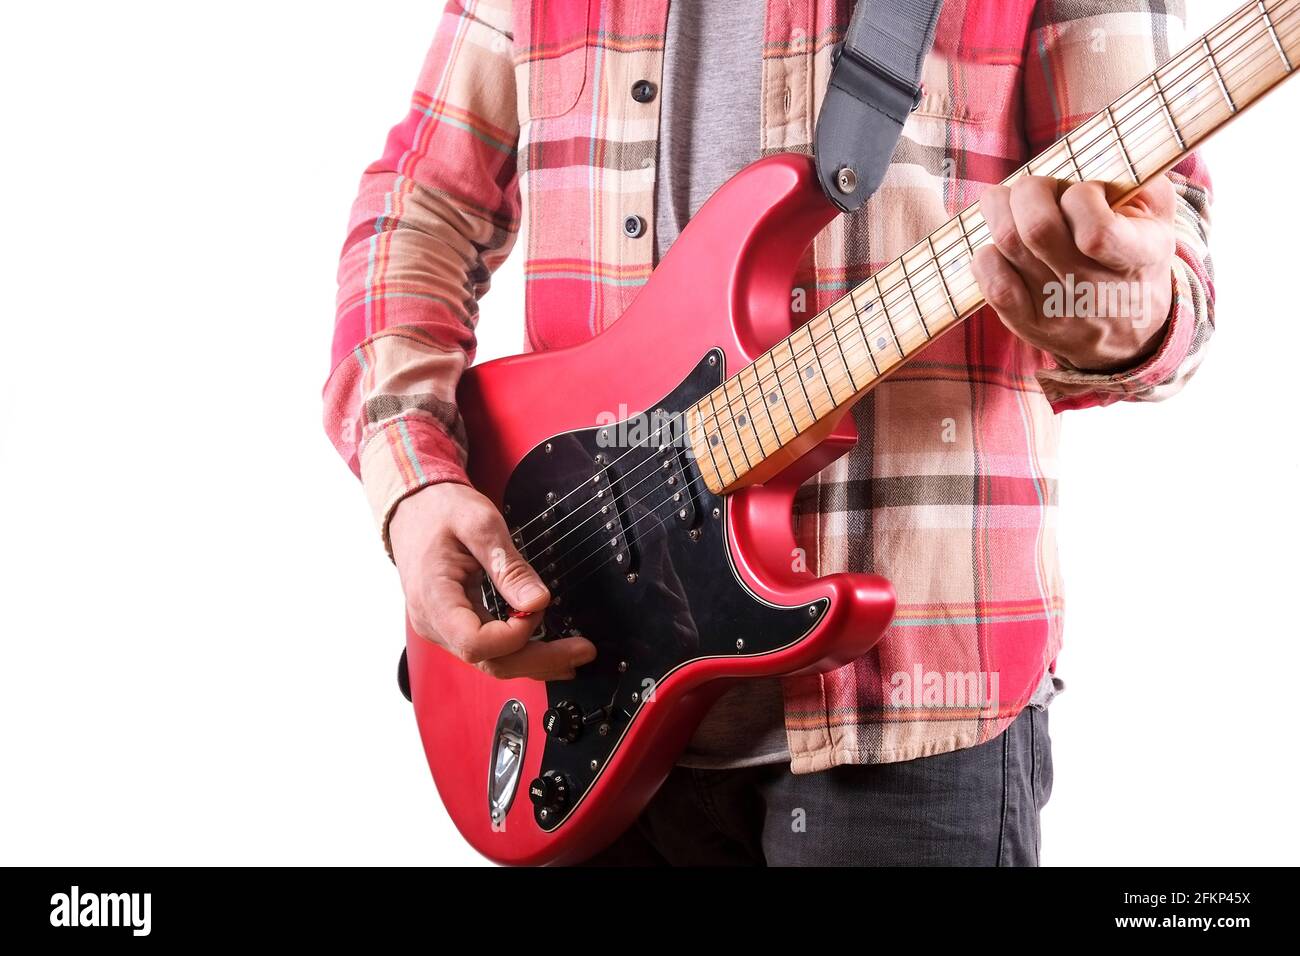 Chitarrista rock in camicia a quadri a scacchi che suona una chitarra elettrica candy mela rossa con bobina singola, collo d'acero e pickguard nero. Uomo che tiene musica inst Foto Stock